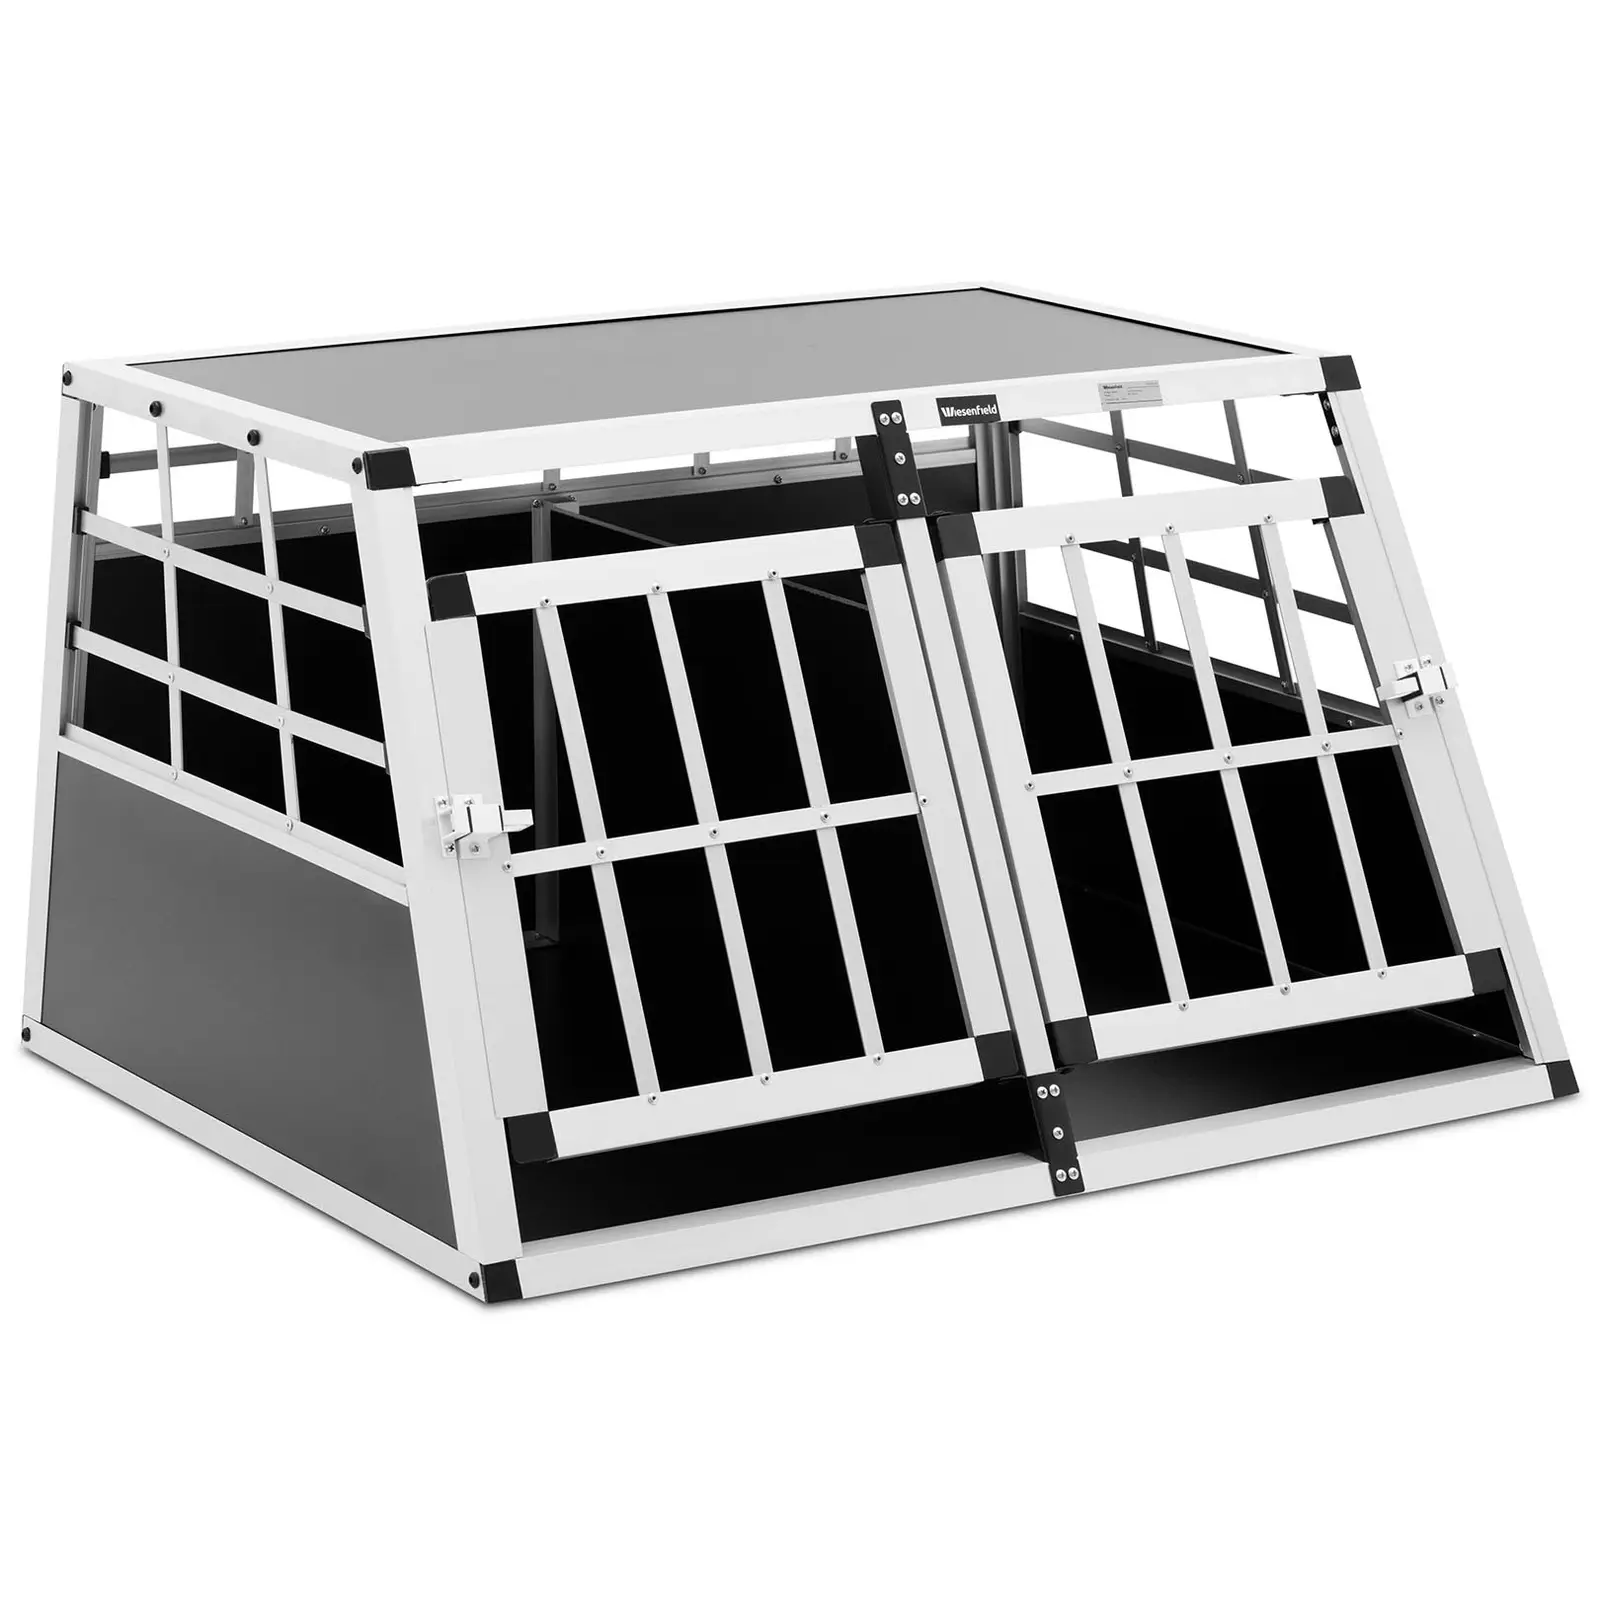 Κλουβί σκύλου - Αλουμίνιο - Τραπεζοειδές σχήμα - 70 x 90 x 50 cm - με διαχωριστικό